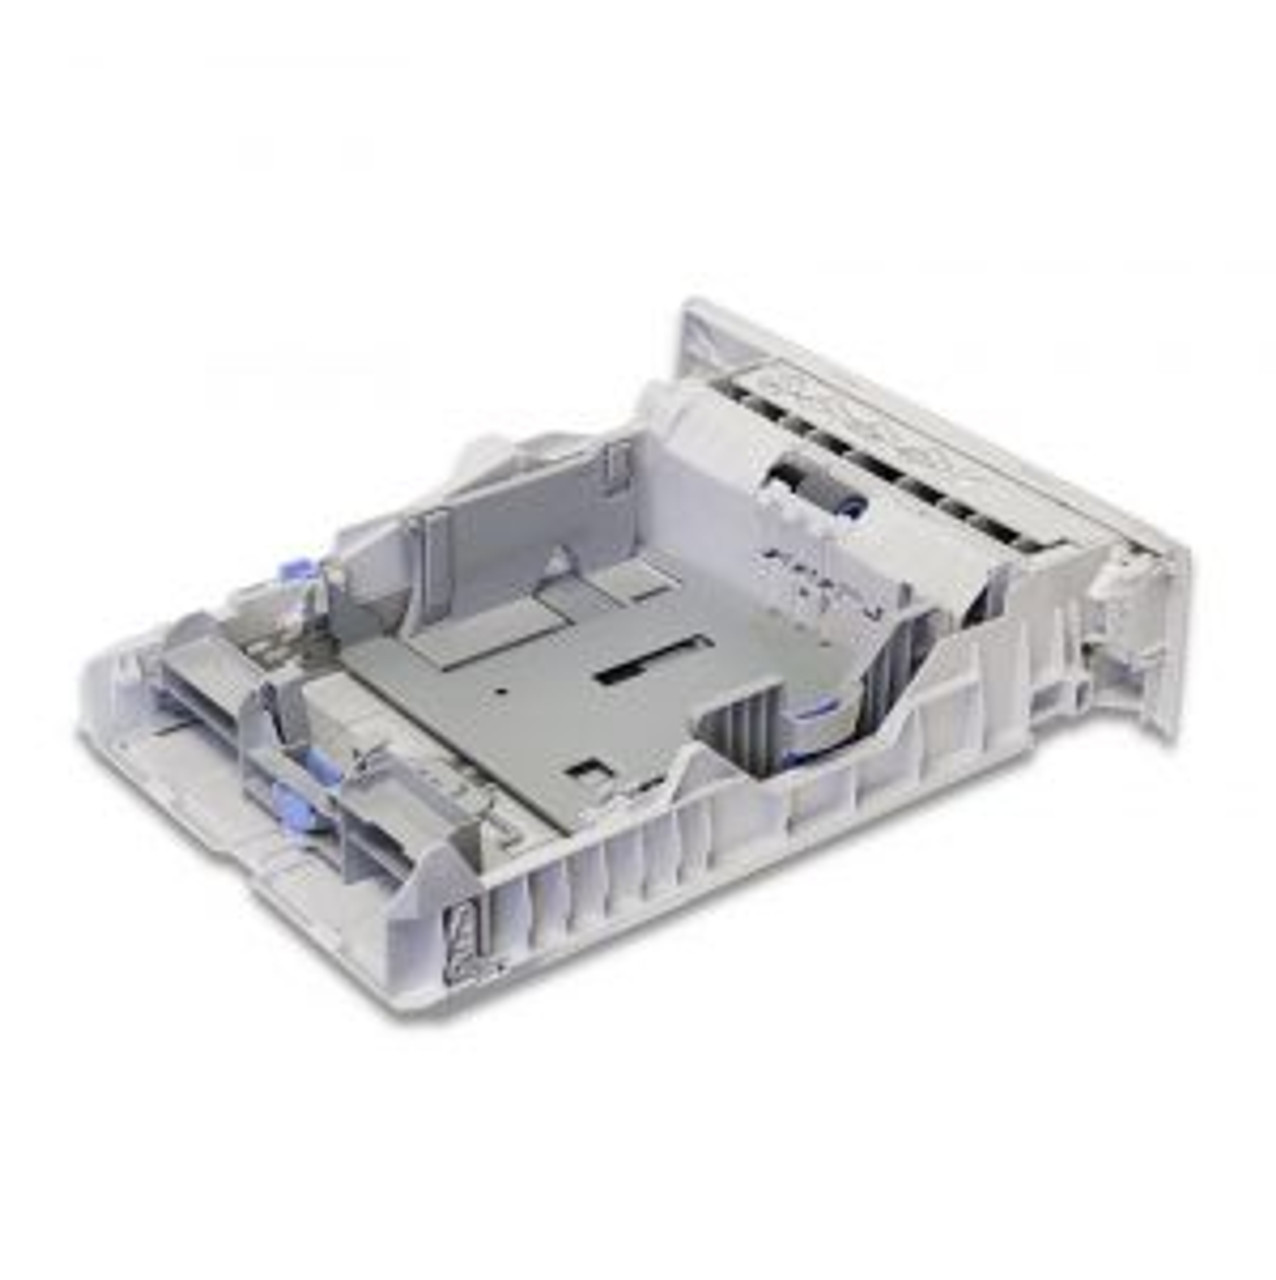 4093-8050 HP 250-Sheet Paper Input Tray 2 Cassette for LaserJet P2015 Printer